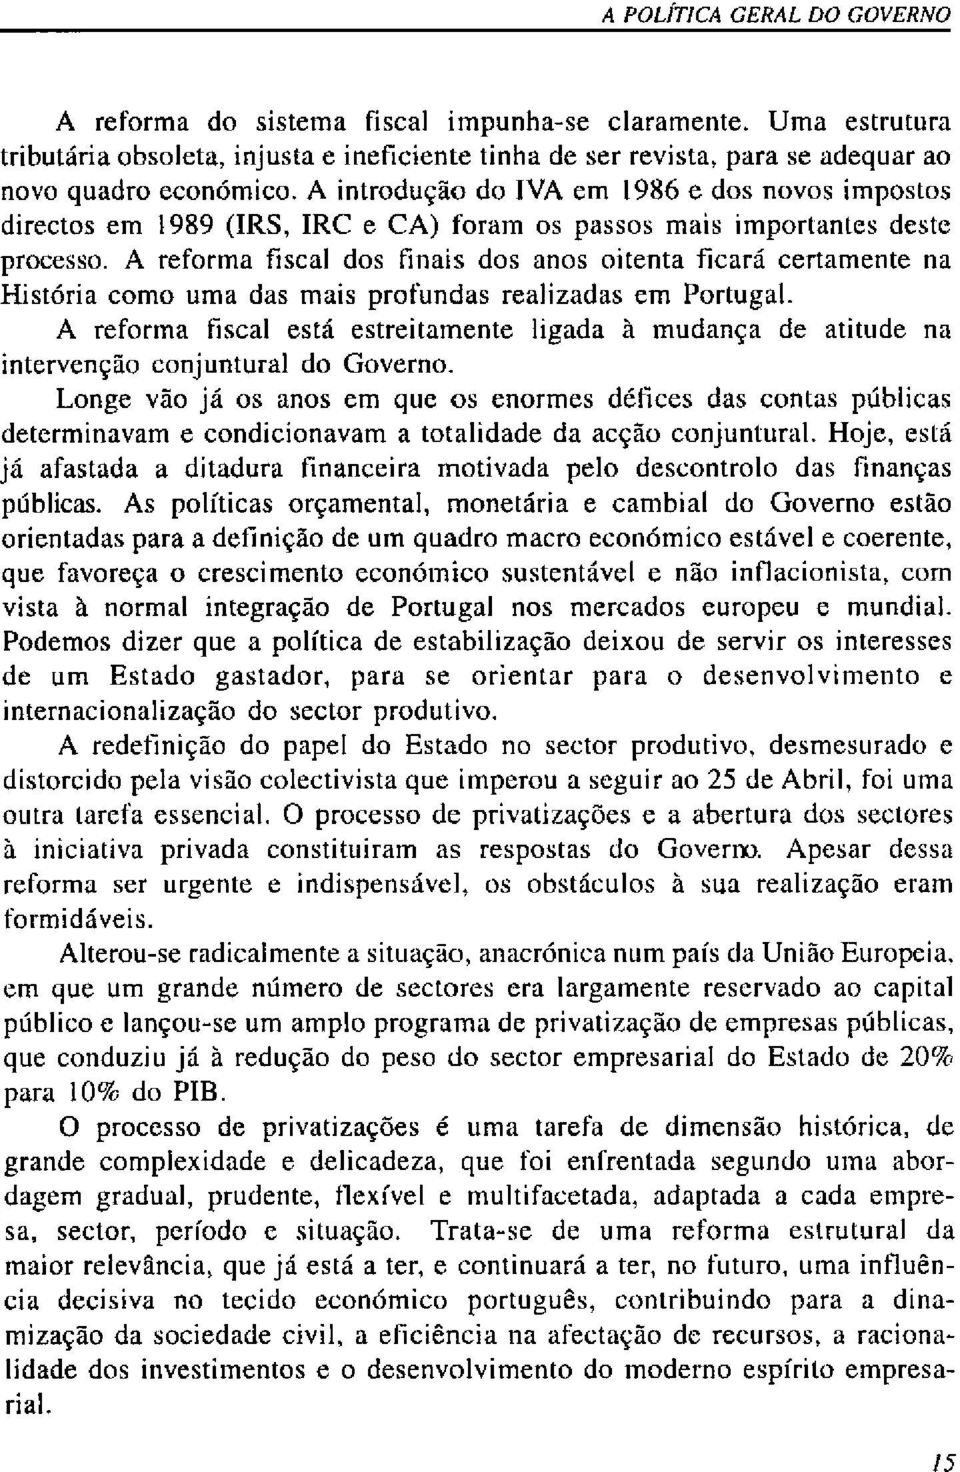 A reforma fiscal dos tinais dos anos oitenta ficará certamente na História como uma das mais profundas realizadas em Portugal.